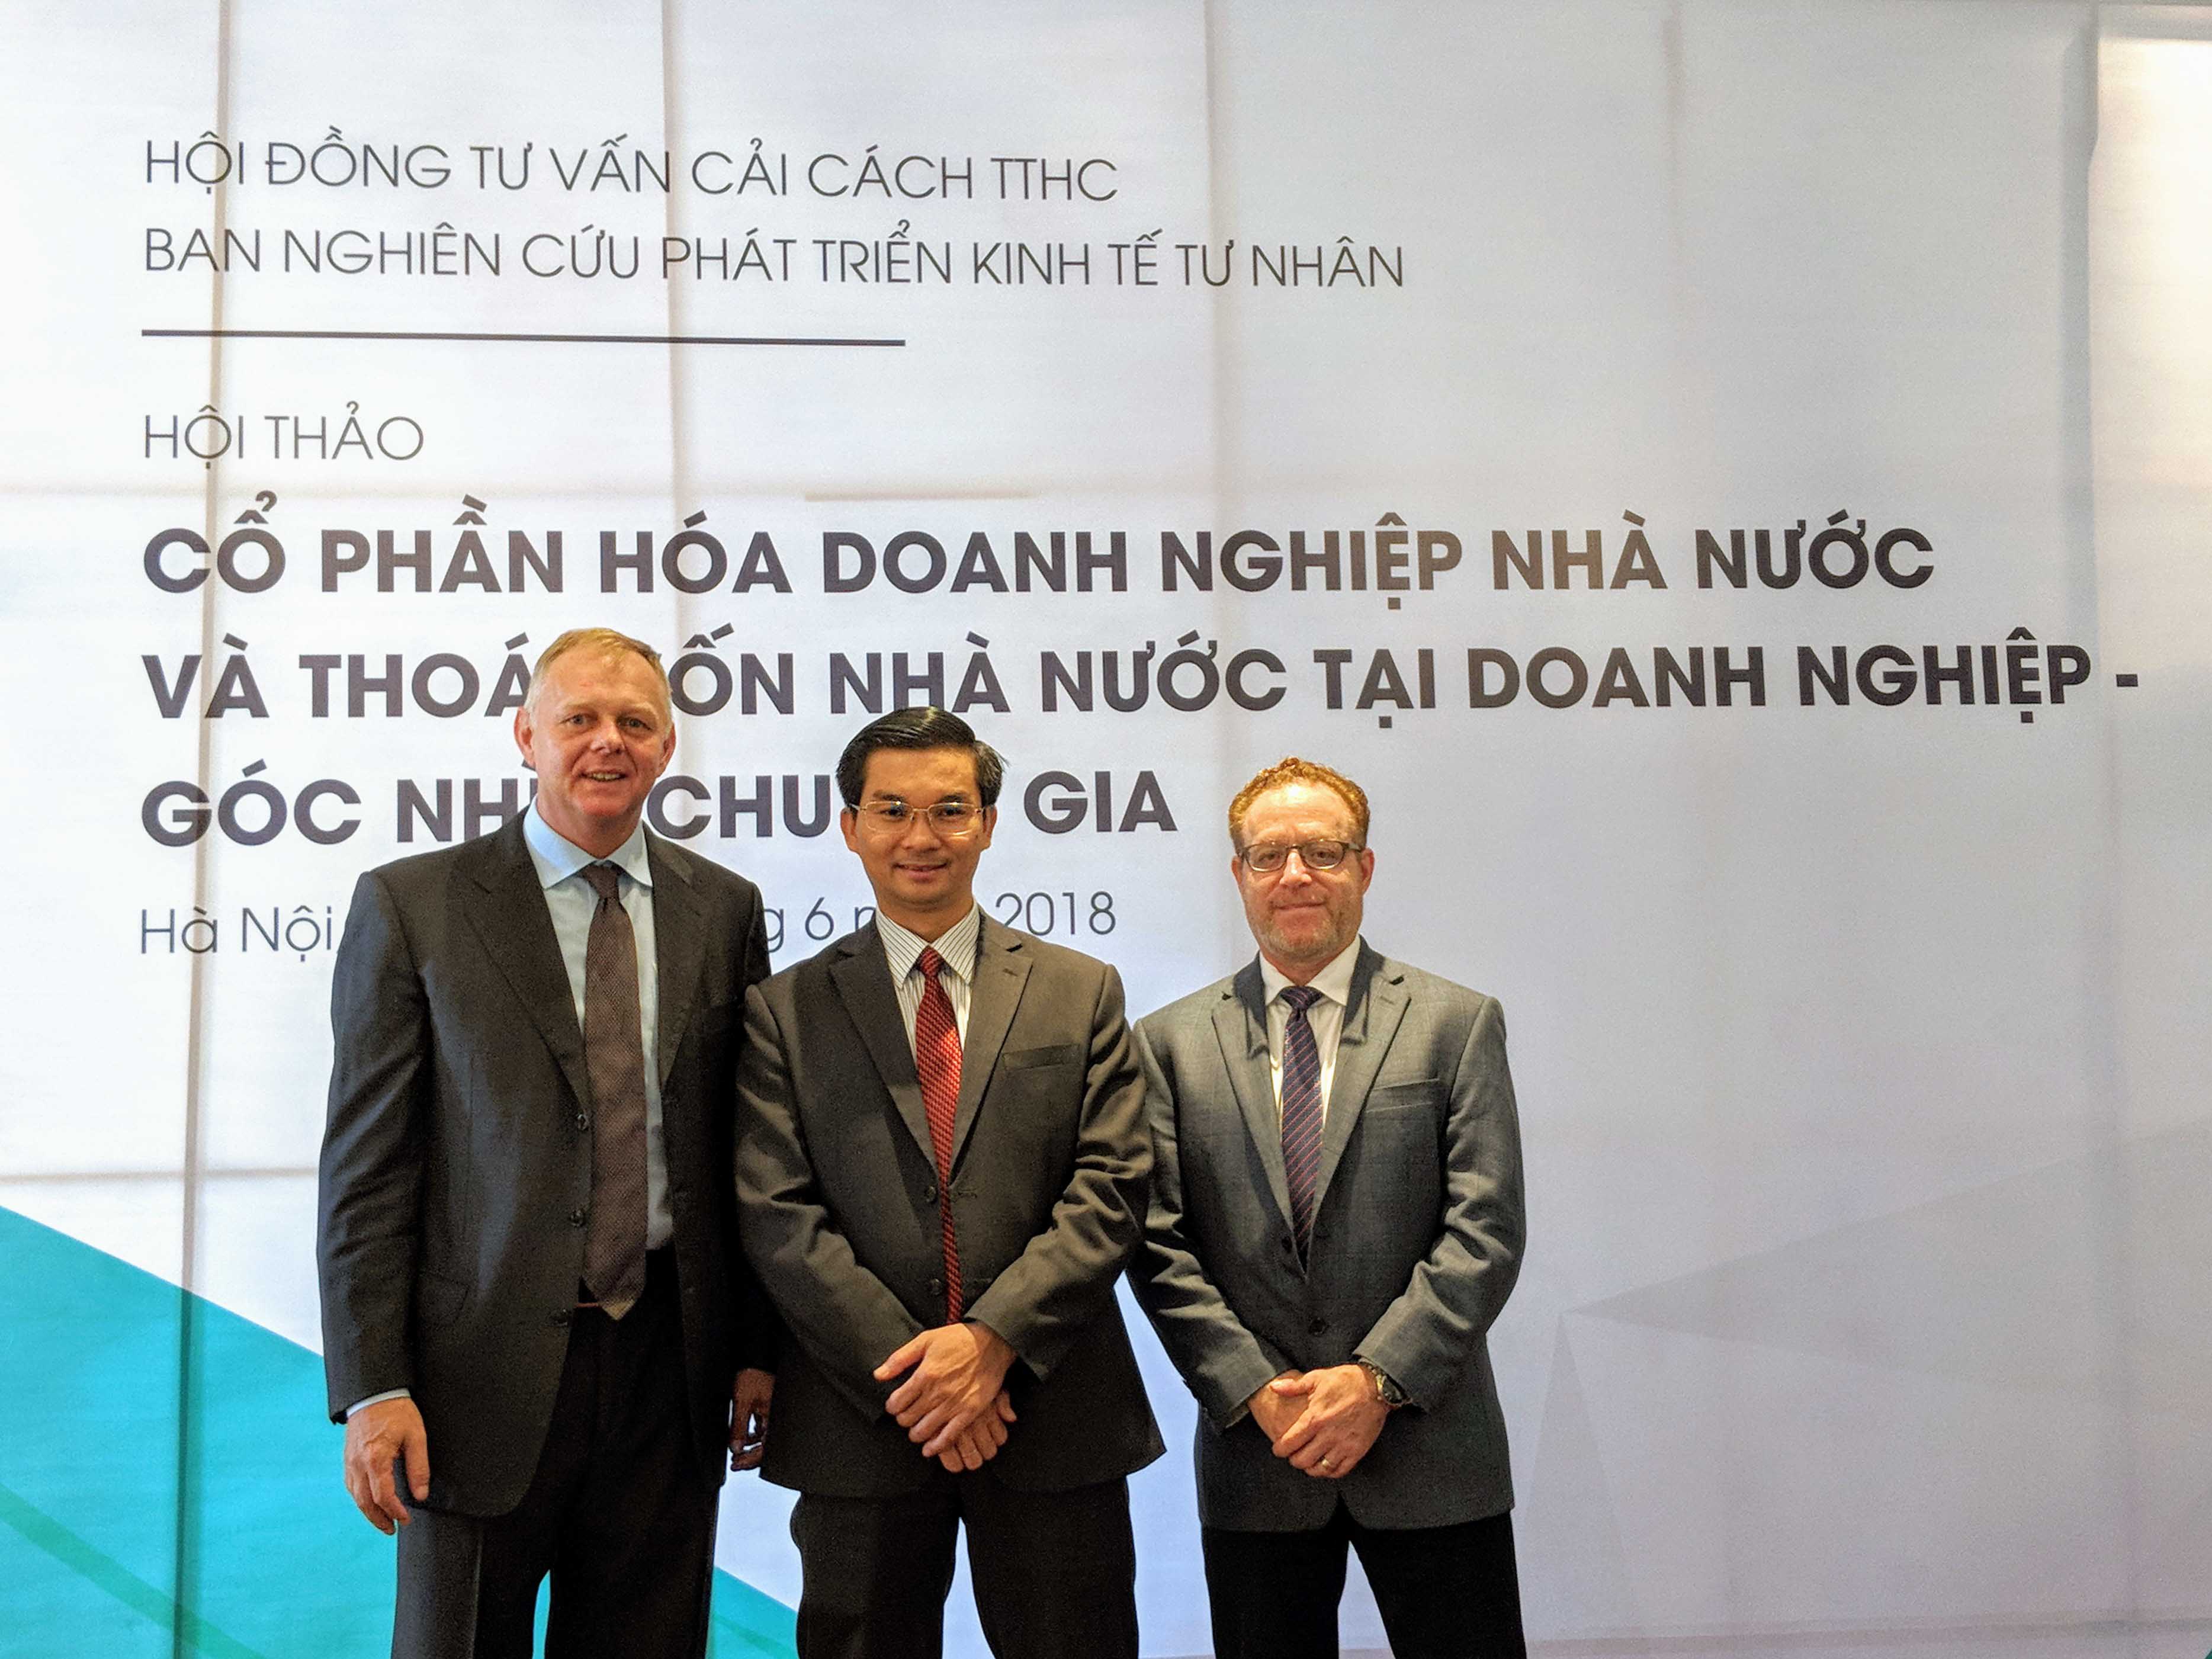 Các nhà nghiên cứu RMIT Việt Nam (từ trái sang phải: Tiến sĩ Burkhard Schrage, Tiến sĩ Nguyễn Quang Trung và Tiến sĩ Victor Kane) vừa kết thúc nghiên cứu chuyên sâu về cổ phần hóa DNNN đang diễn ra ở Việt Nam.